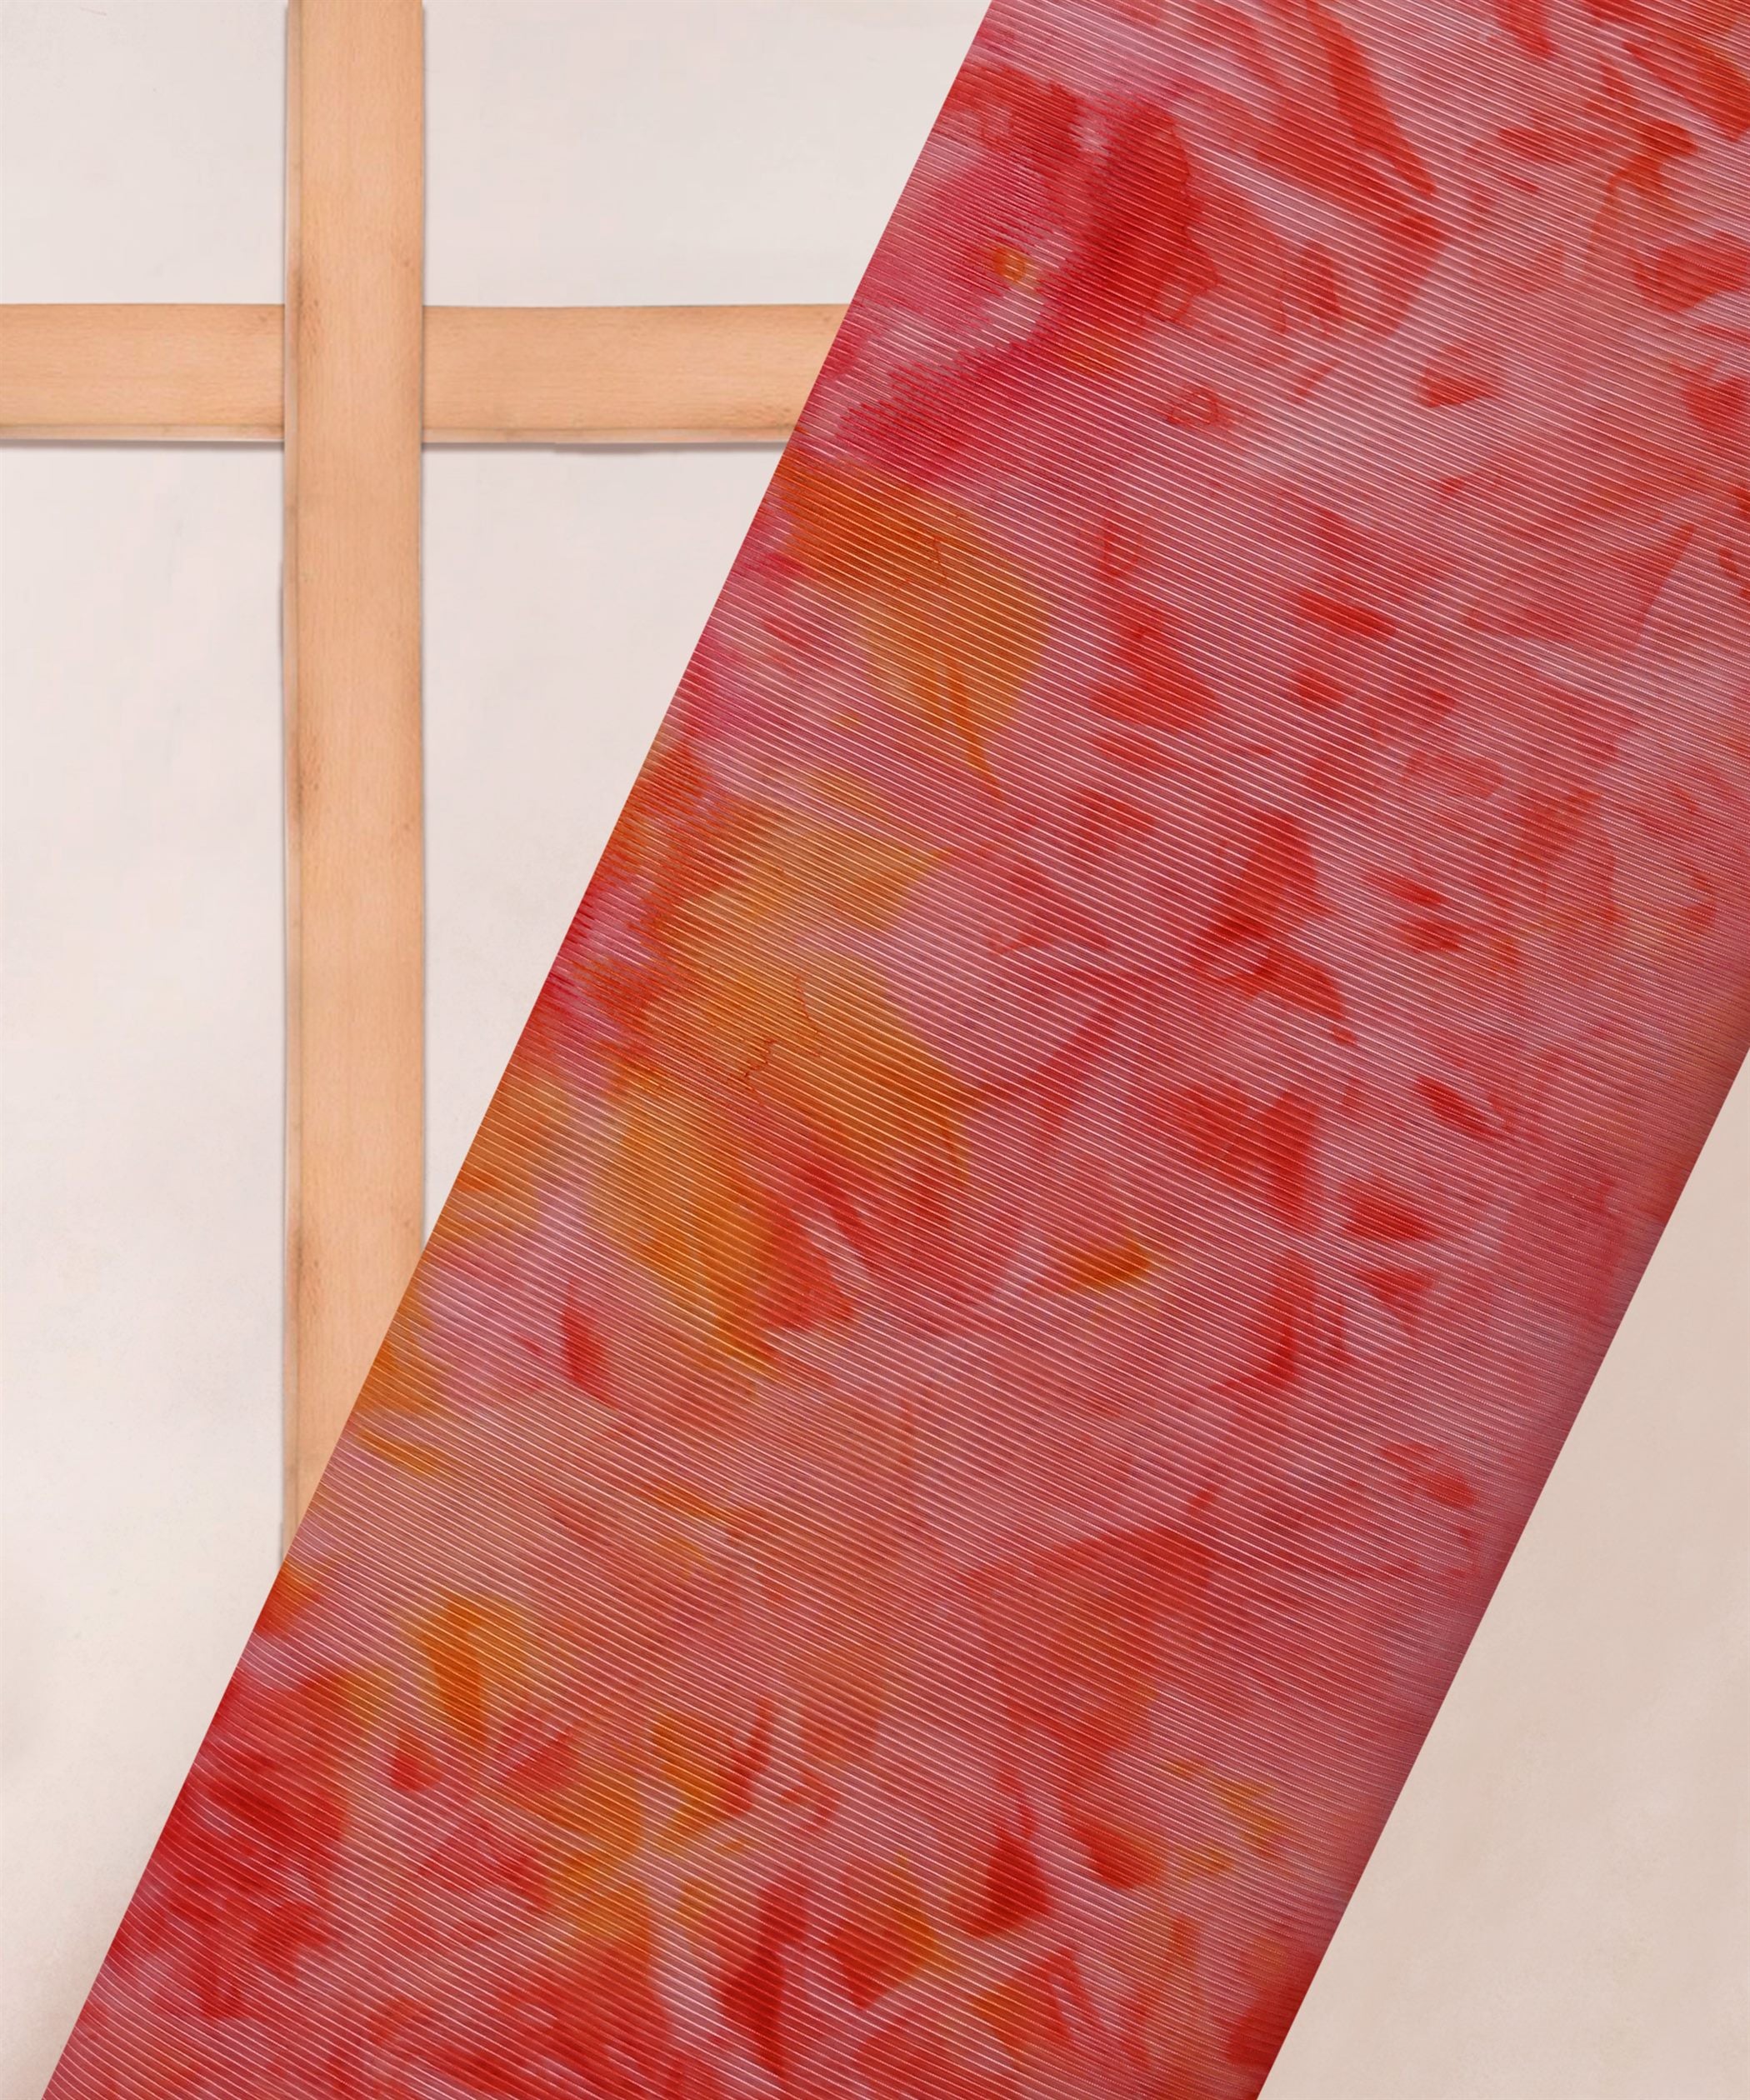 Red Organza Fabric with Shibori Print